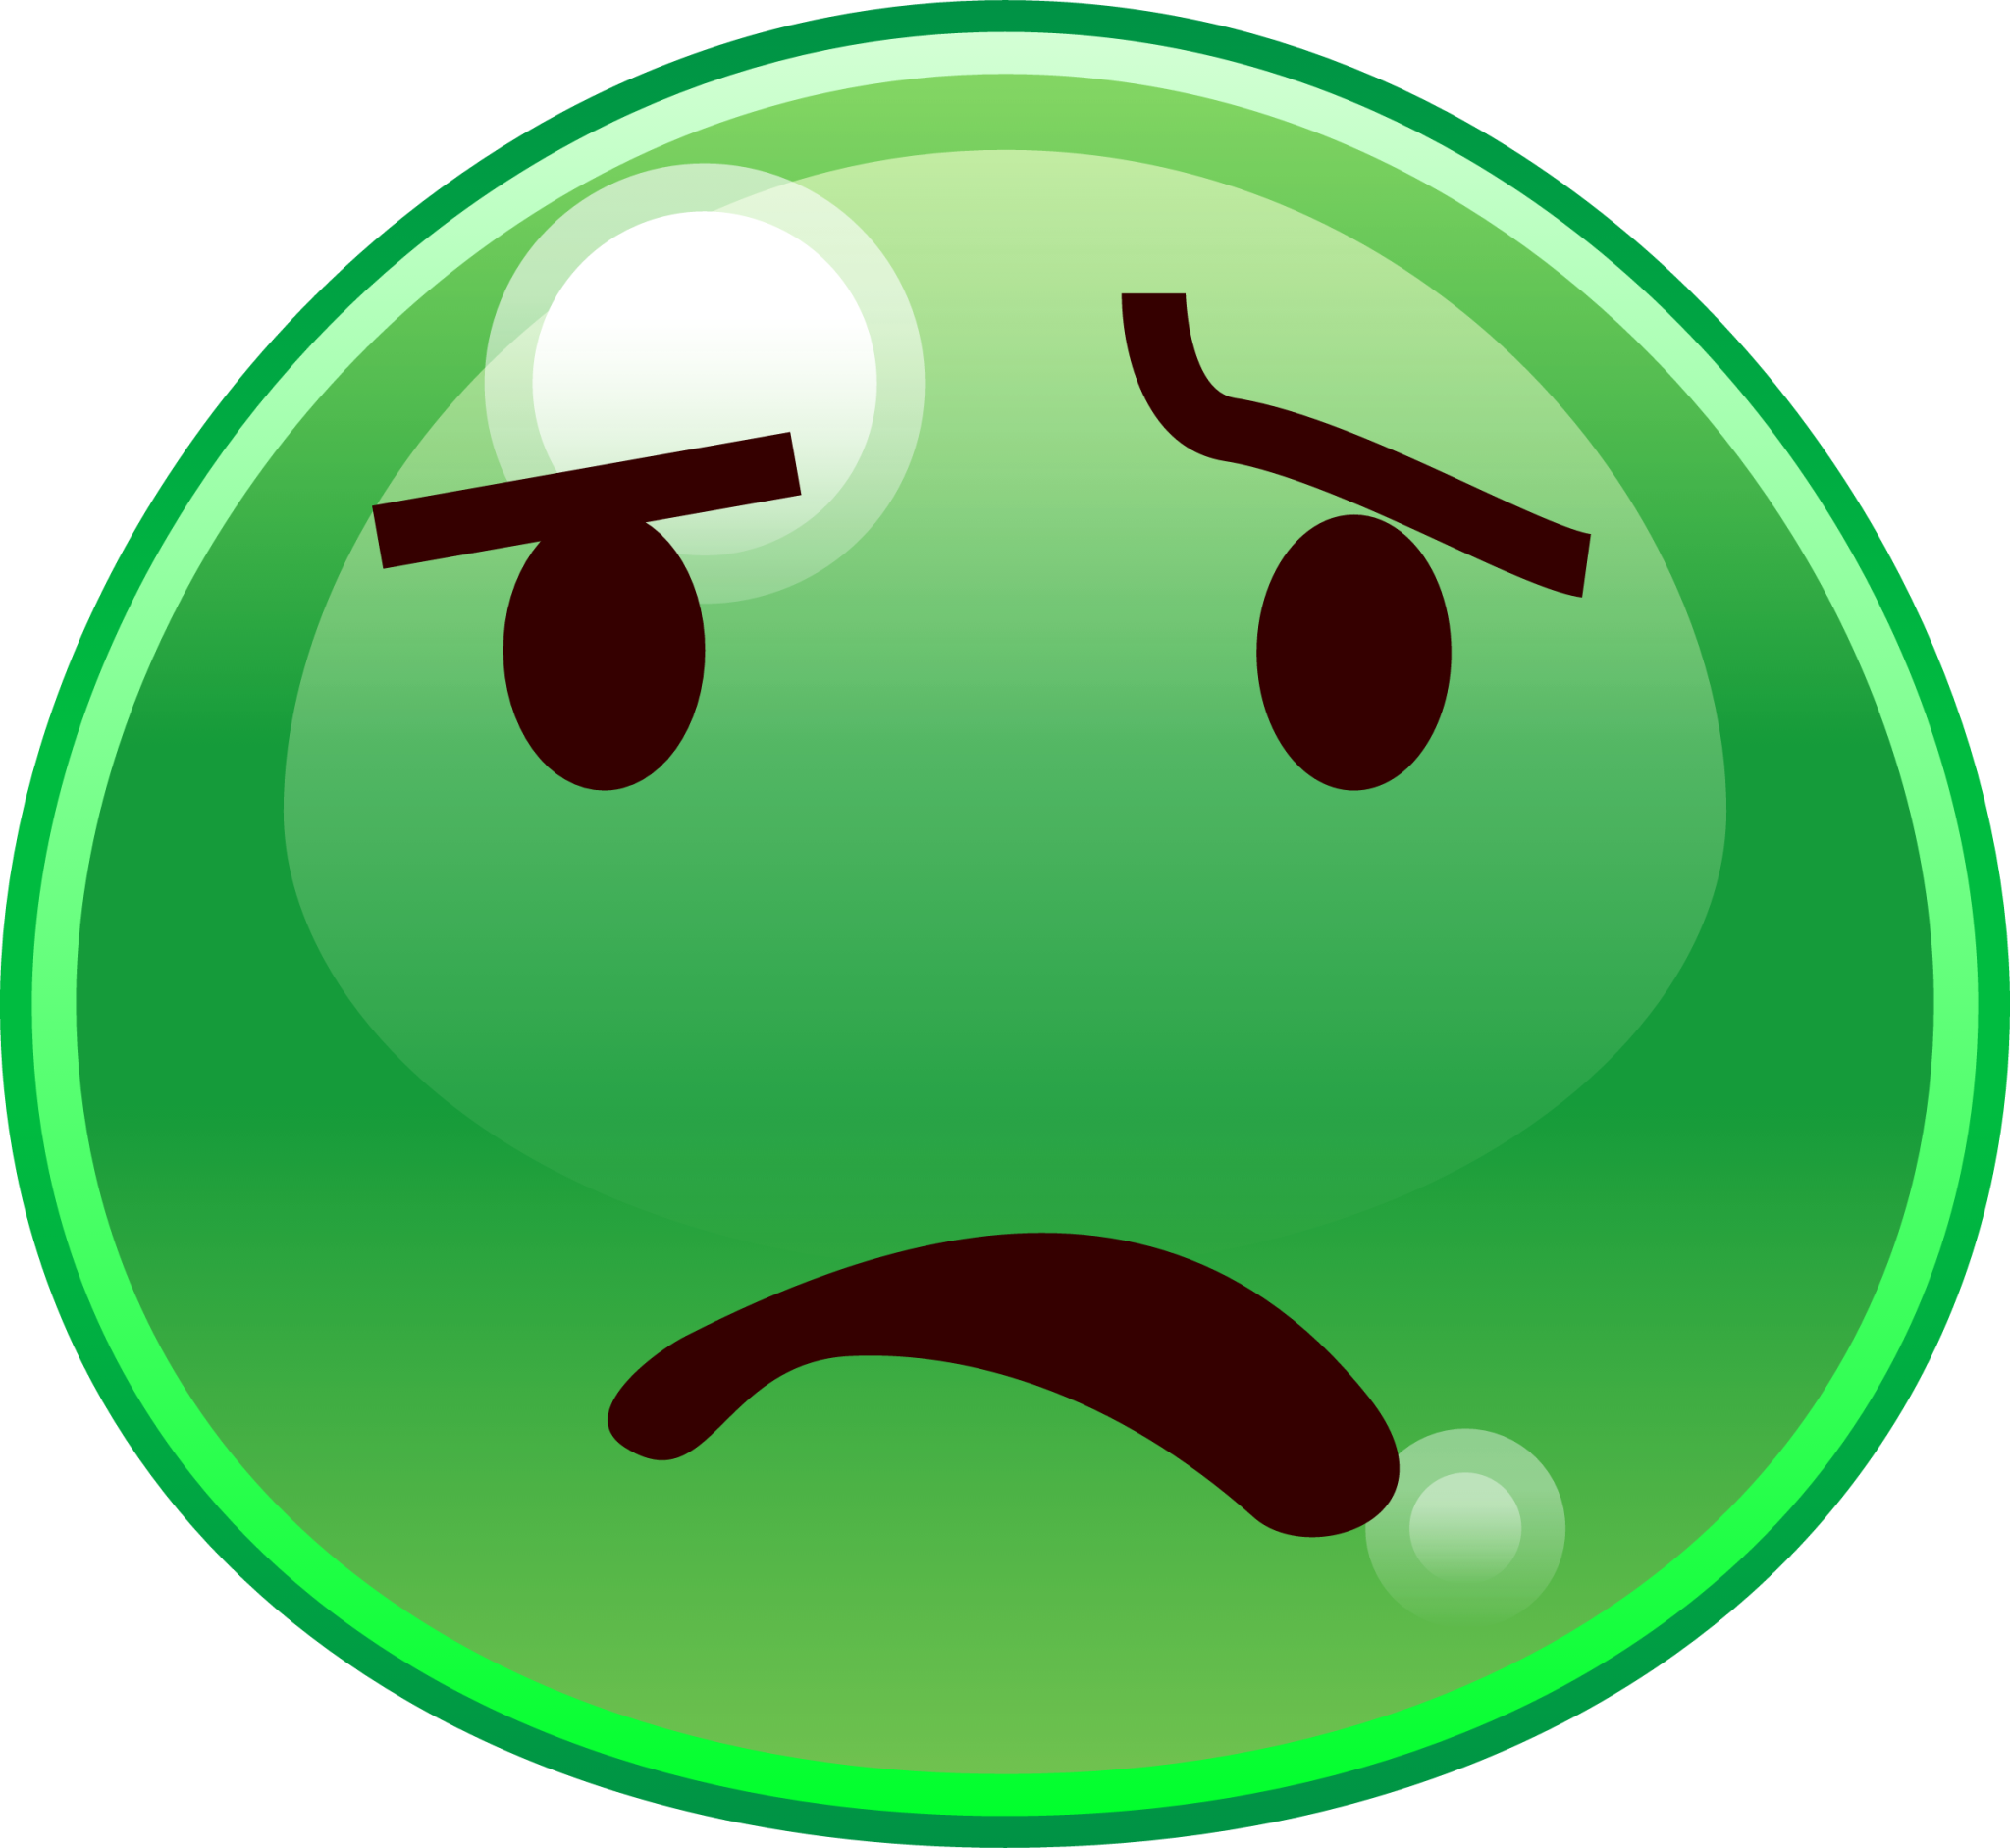 anguished (slime) emoji